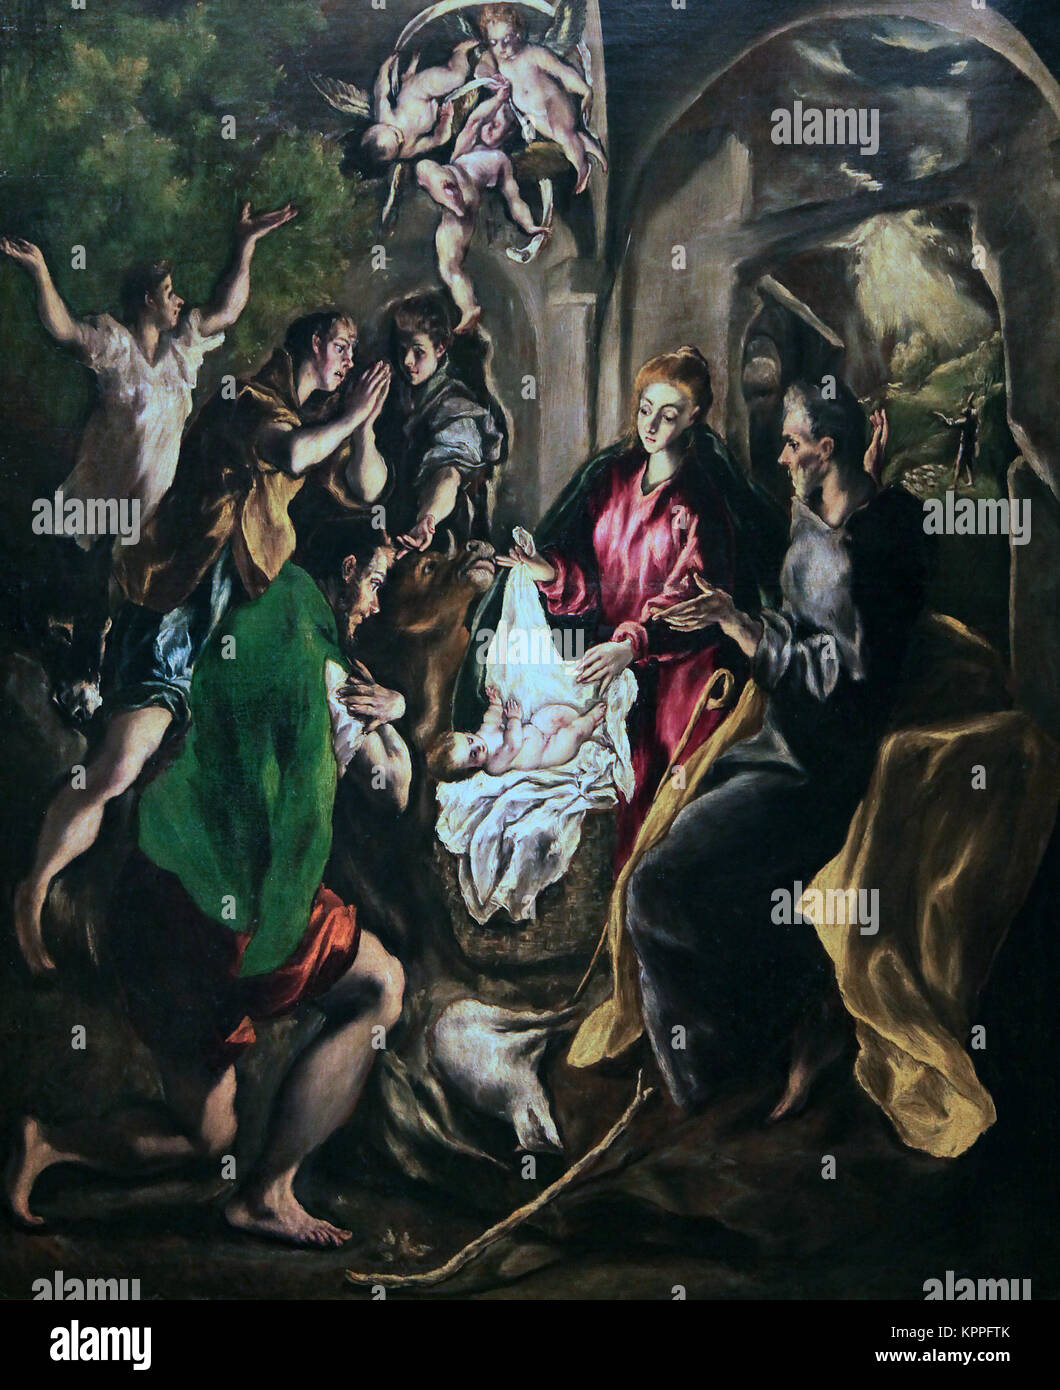 El Greco. Die Anbetung der Hirten La Adoracion de Los Pastores von El Greco. Doménikos Theotokópoulos "der Grieche" ein Maler in Spanien Stockfoto